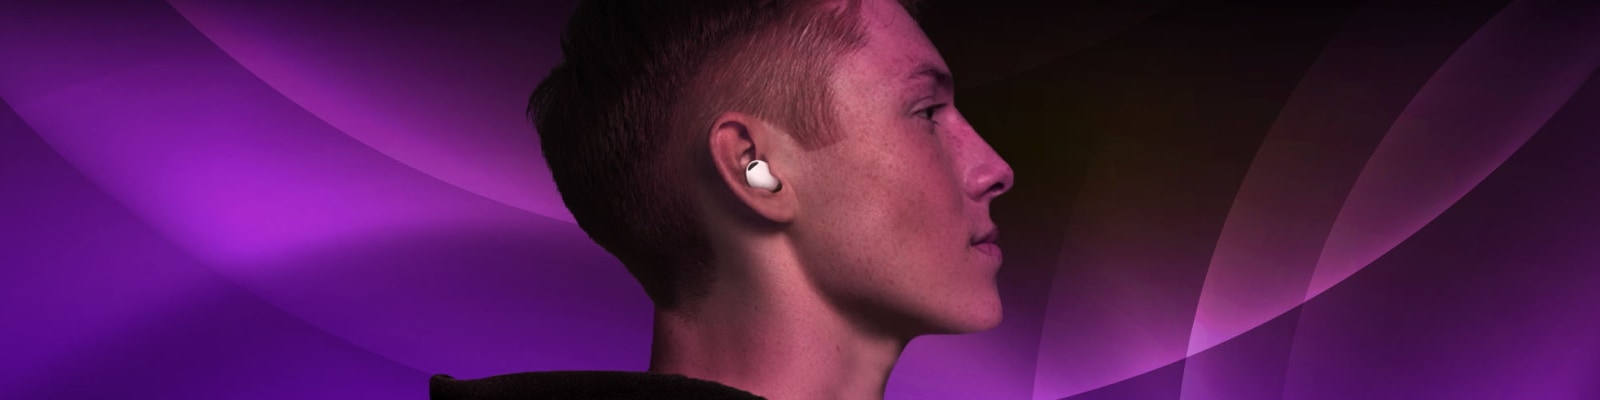 Draadloze oortjes: zo kies de juiste oordopjes | Samsung | Samsung Nederland